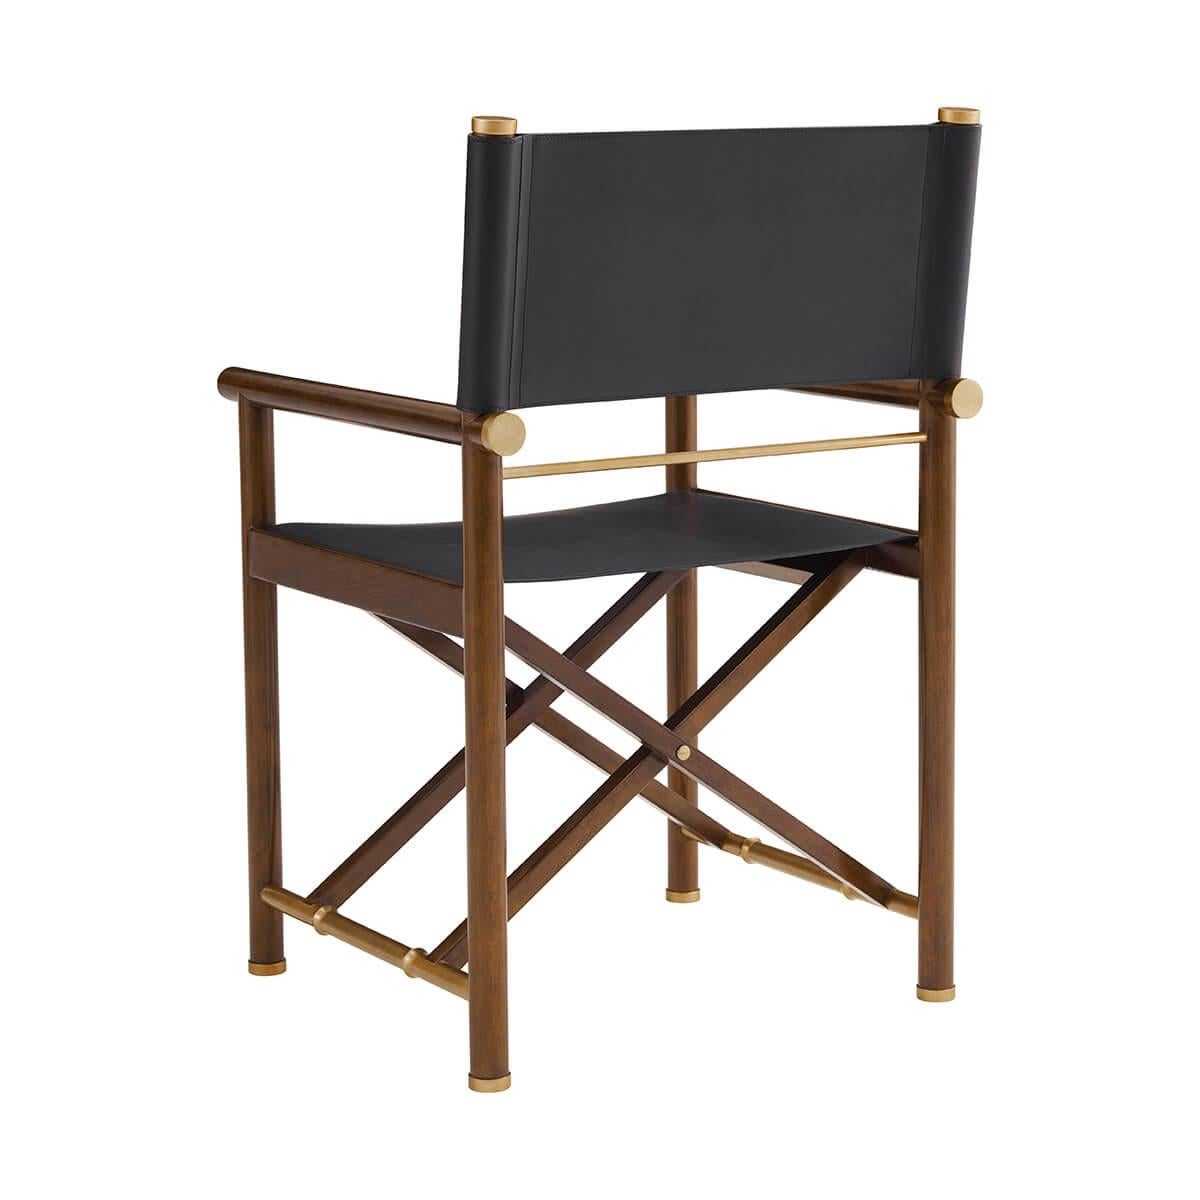 Cette chaise est dotée d'un dossier et d'une assise en cuir noir sophistiqués, associés à un cadre en hêtre riche en bois et à d'élégantes touches de laiton pour une touche de luxe.

Parfait pour ceux qui apprécient le style intemporel avec une